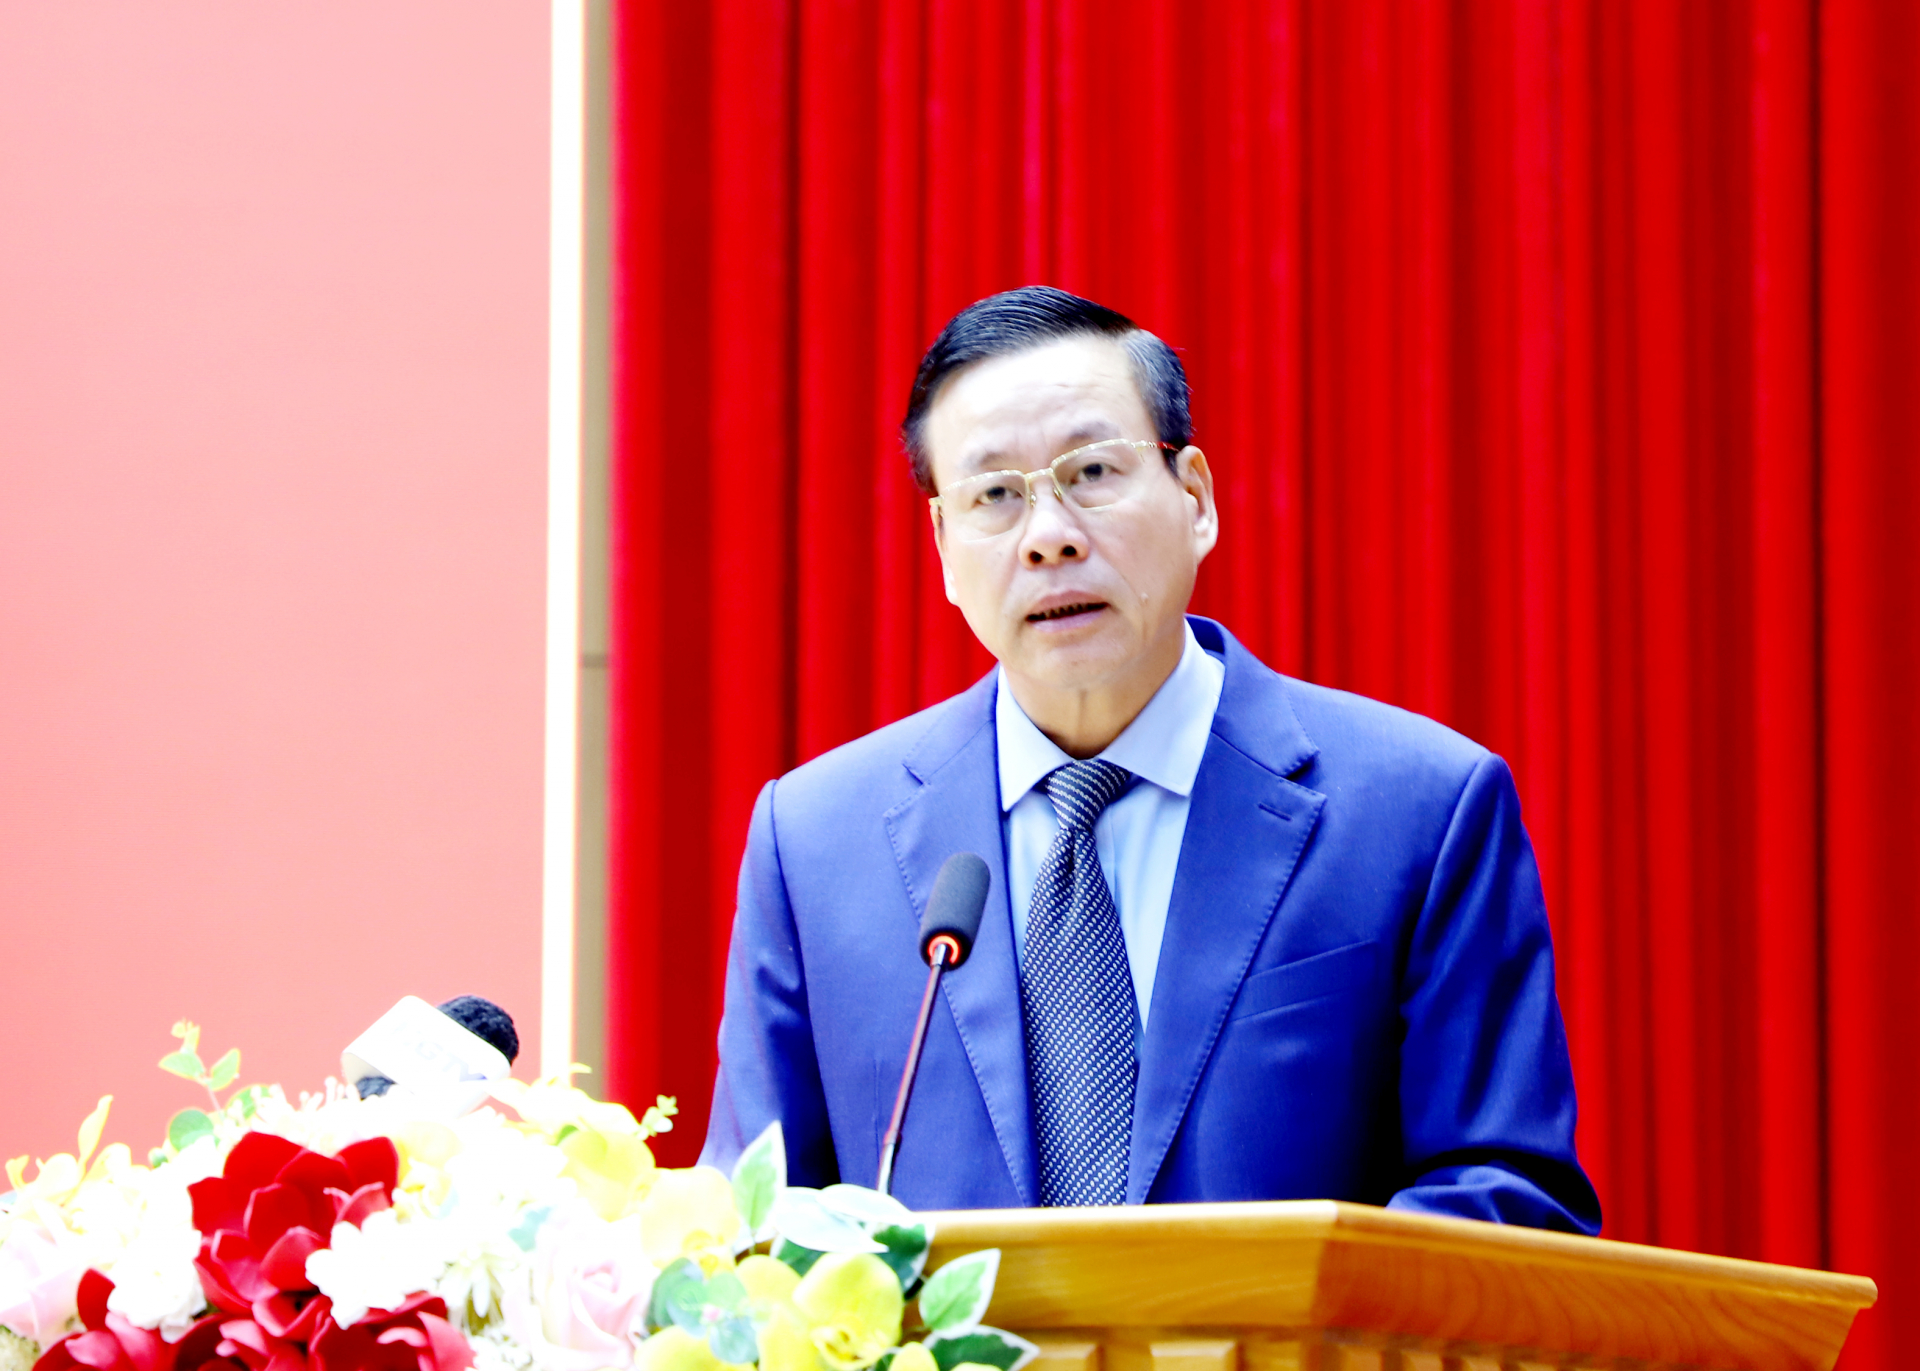 Chủ tịch UBND tỉnh Nguyễn Văn Sơn phát biểu tại hội nghị